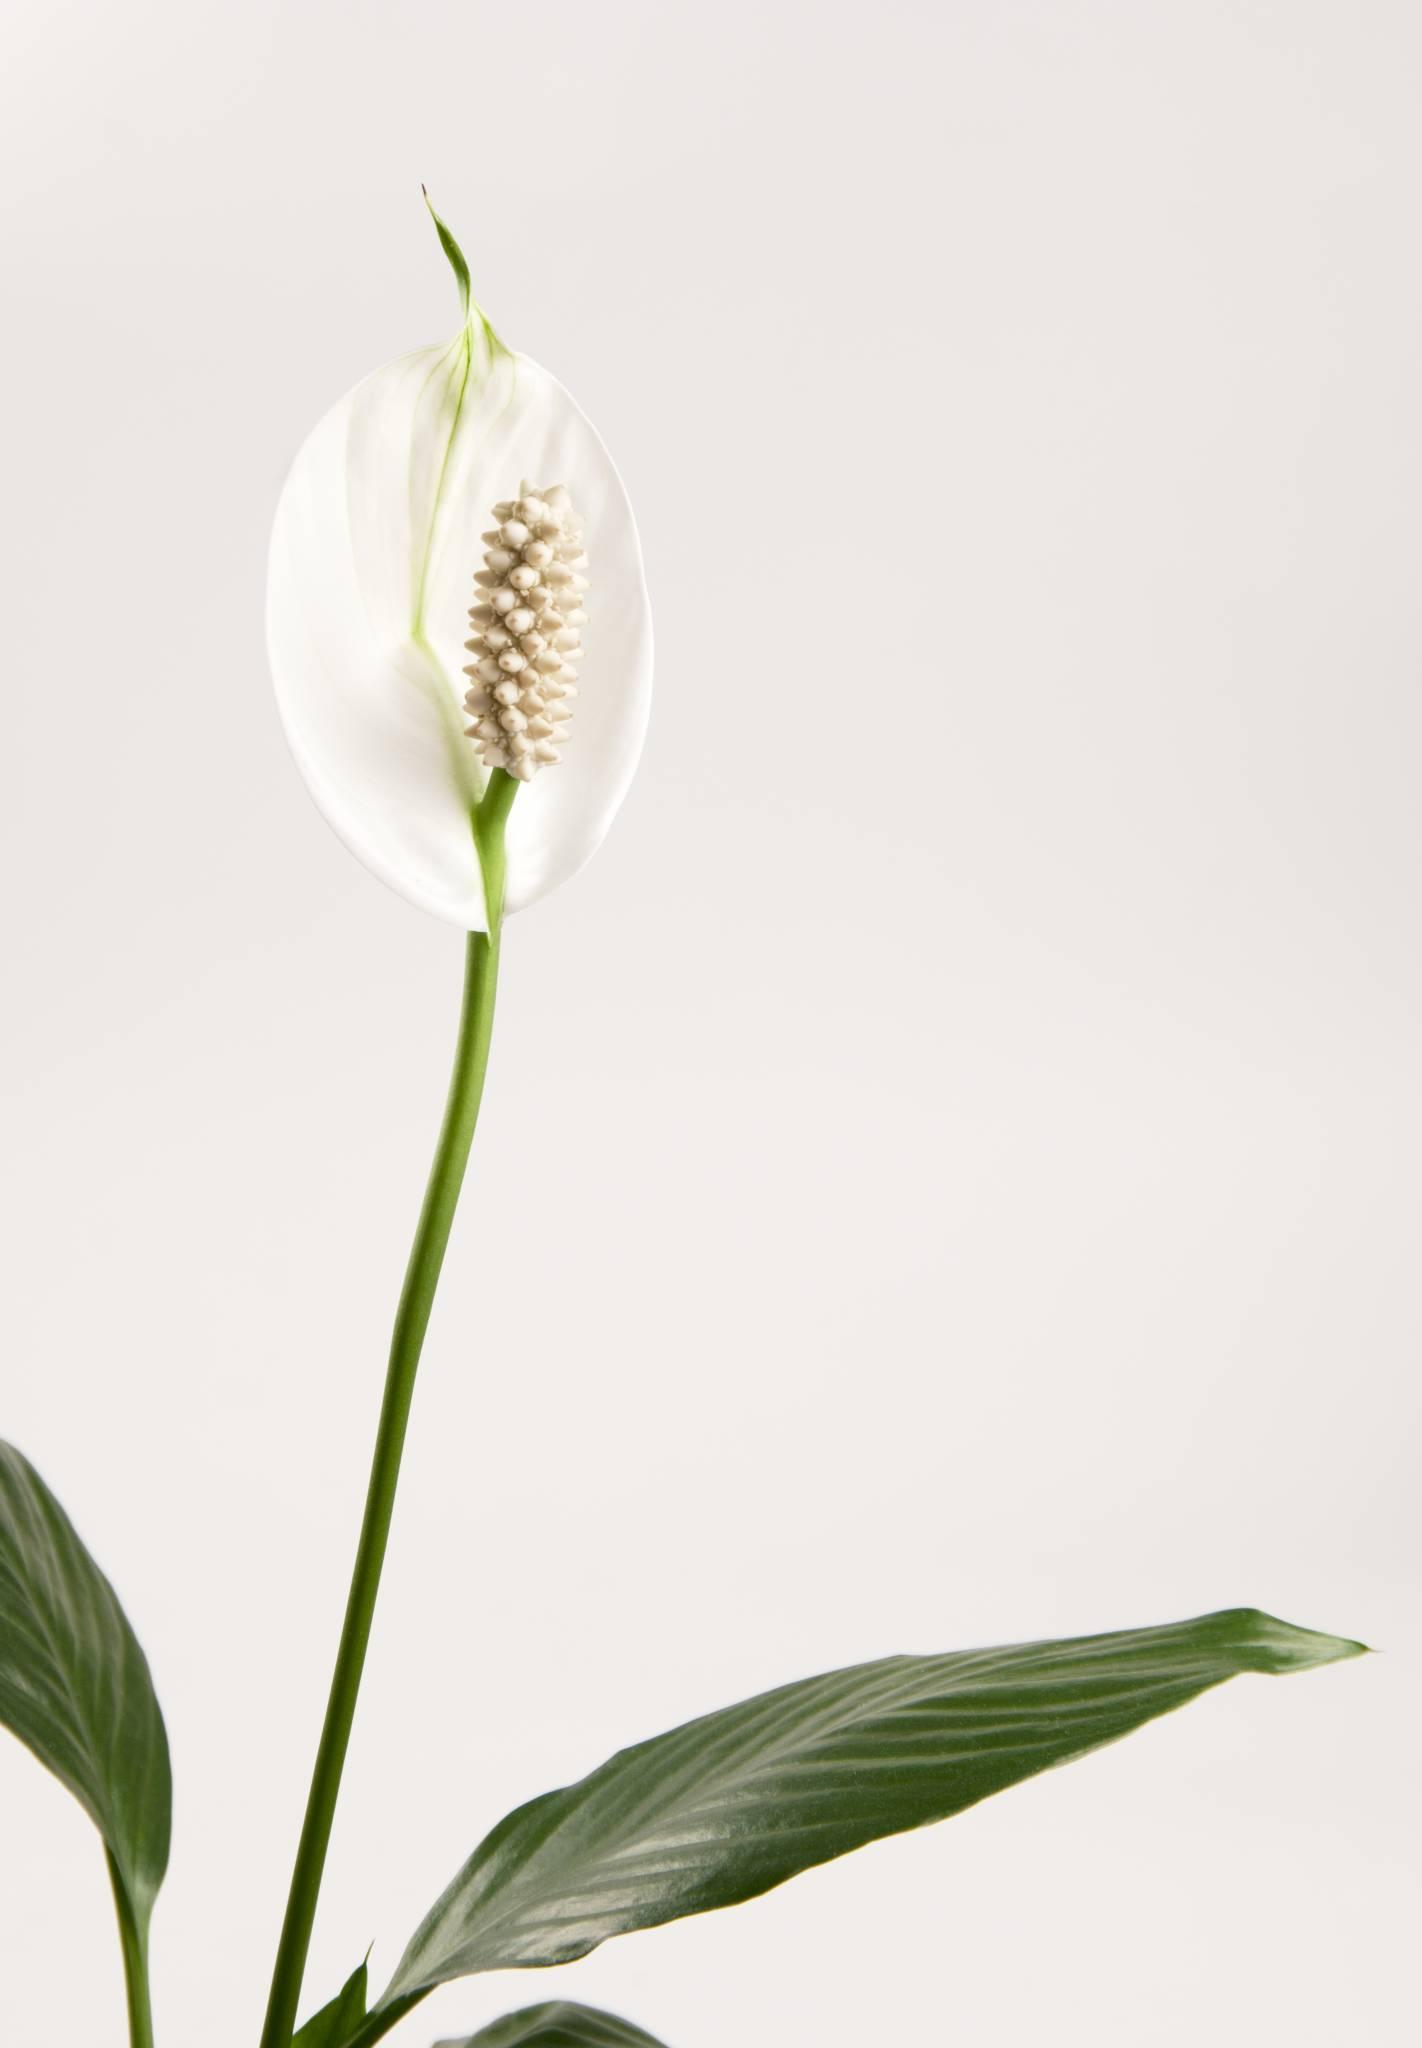  Skrzydłokwiat (fot. iStock)